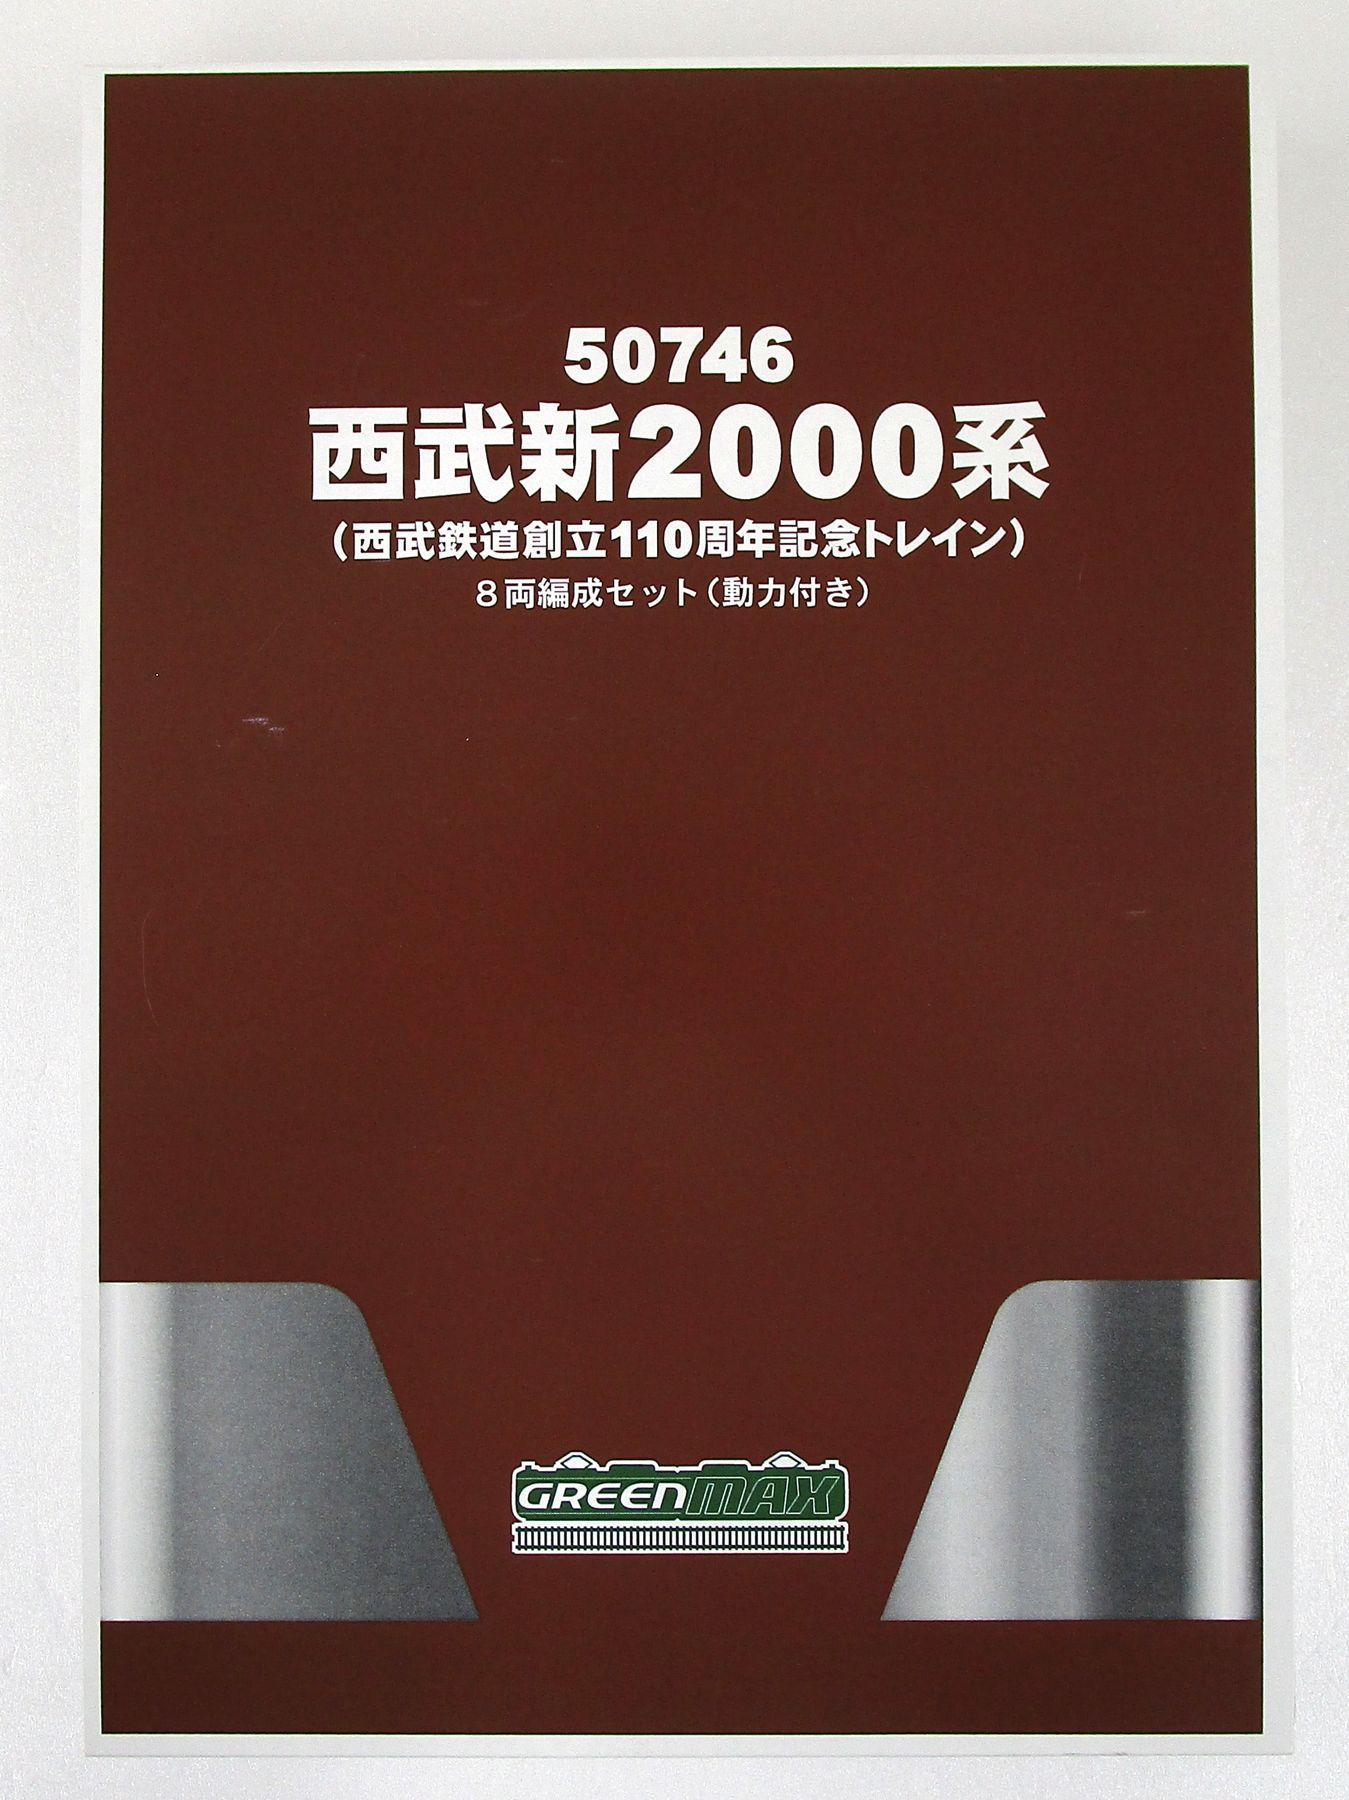 公式]鉄道模型(50746西武新2000系(西武鉄道創立110周年記念トレイン) 8